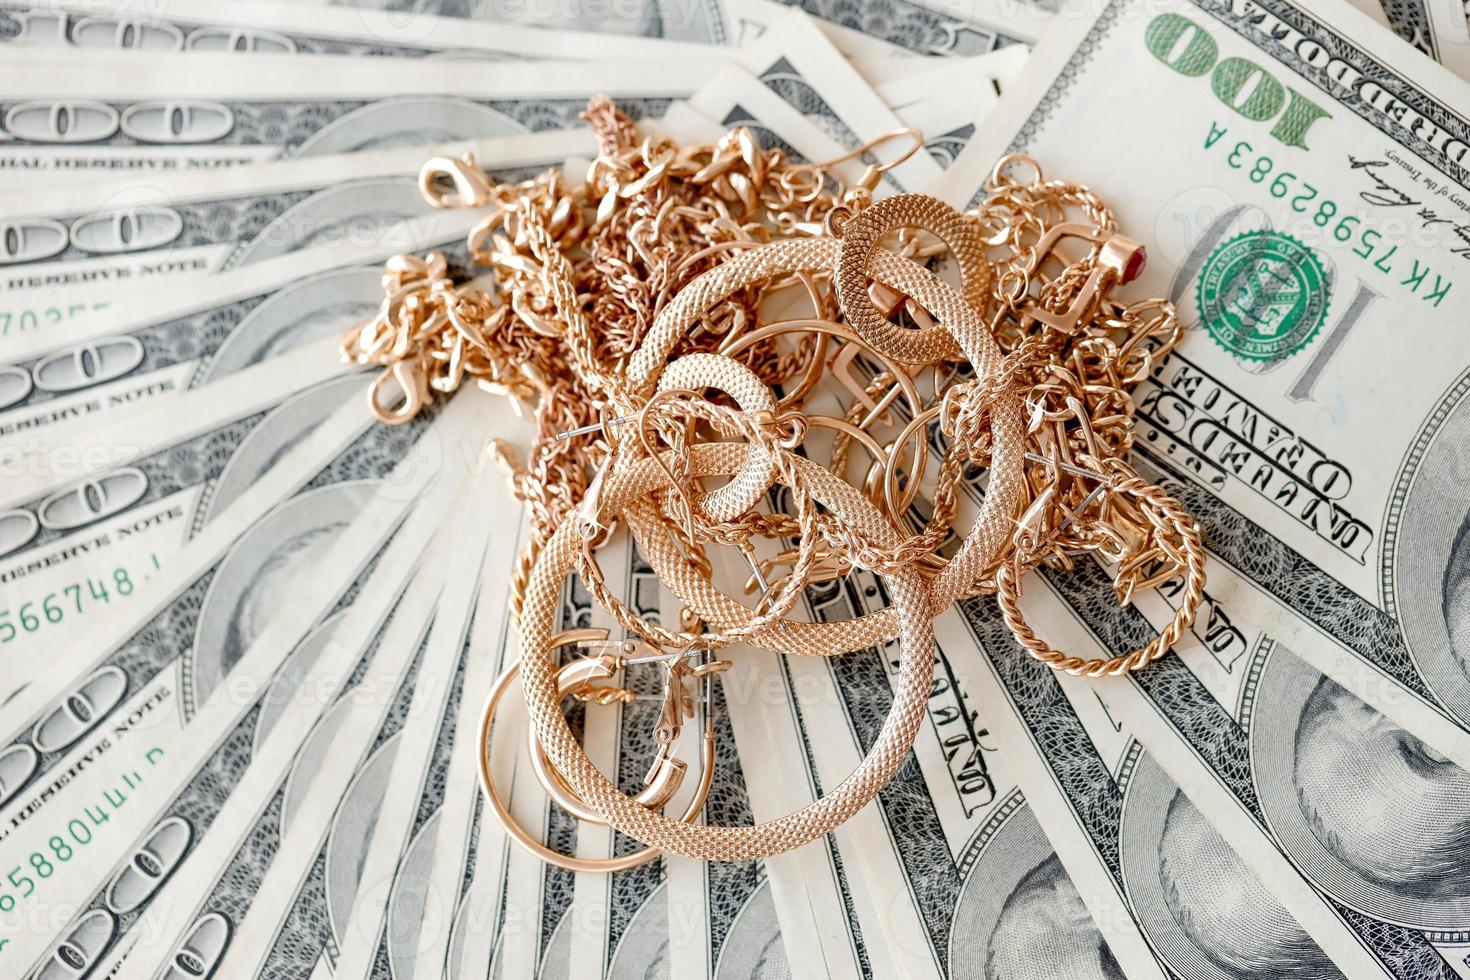 muchos costosos anillos de joyería de oro, aretes y collares en una gran cantidad de billetes de dólares estadounidenses de cerca. casa de empeño o joyería foto